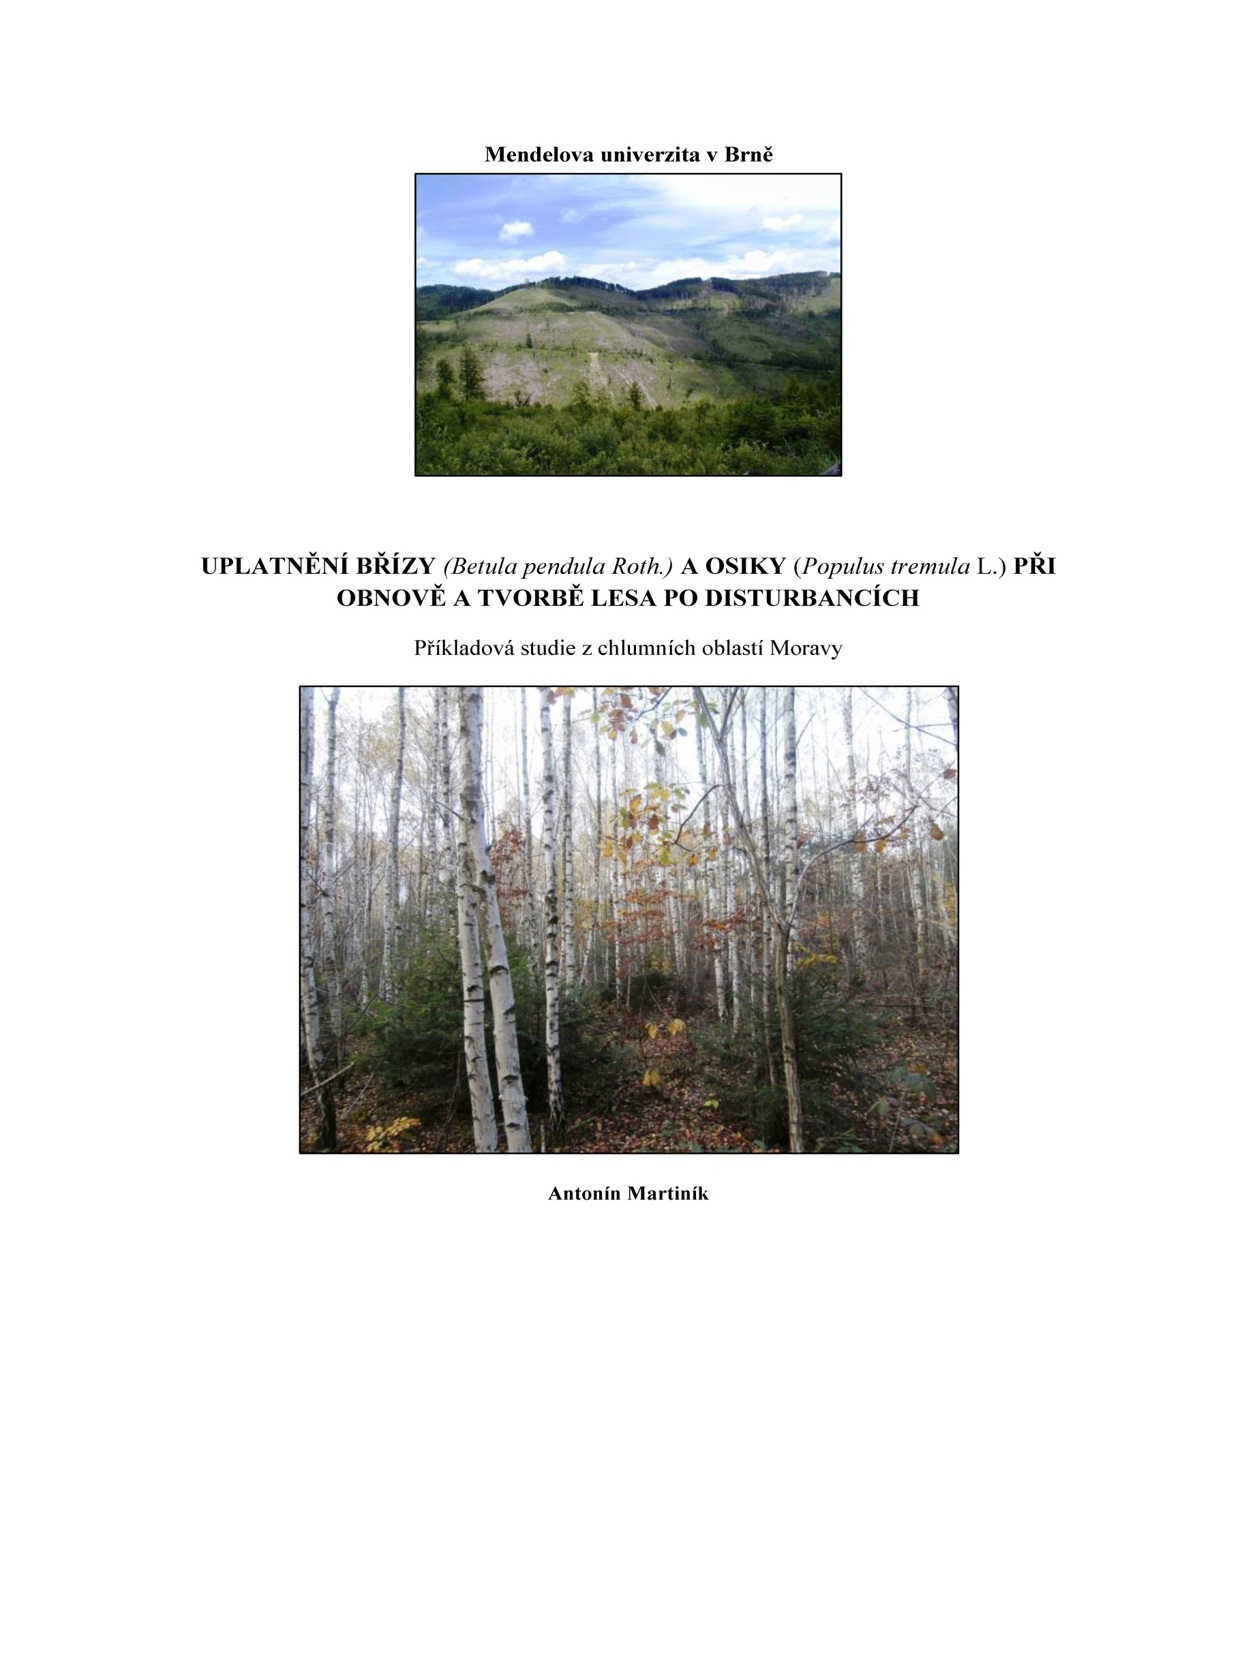 Obr. 4 Možnosti obnovy lesa po disturbancích na základě exaktních vědeckých dat - tedy ne, že to nejde (Martiník 2019).